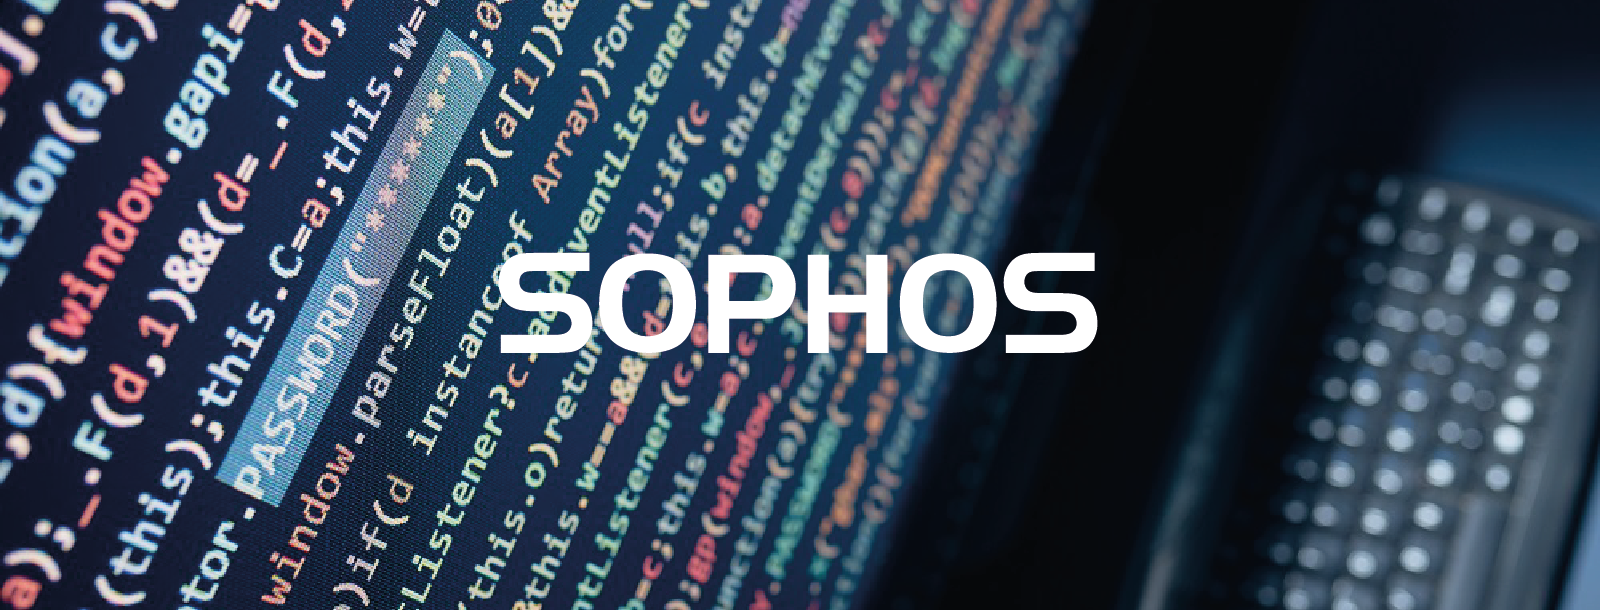 Botnet Qakbot znów atakuje – analiza Sophos